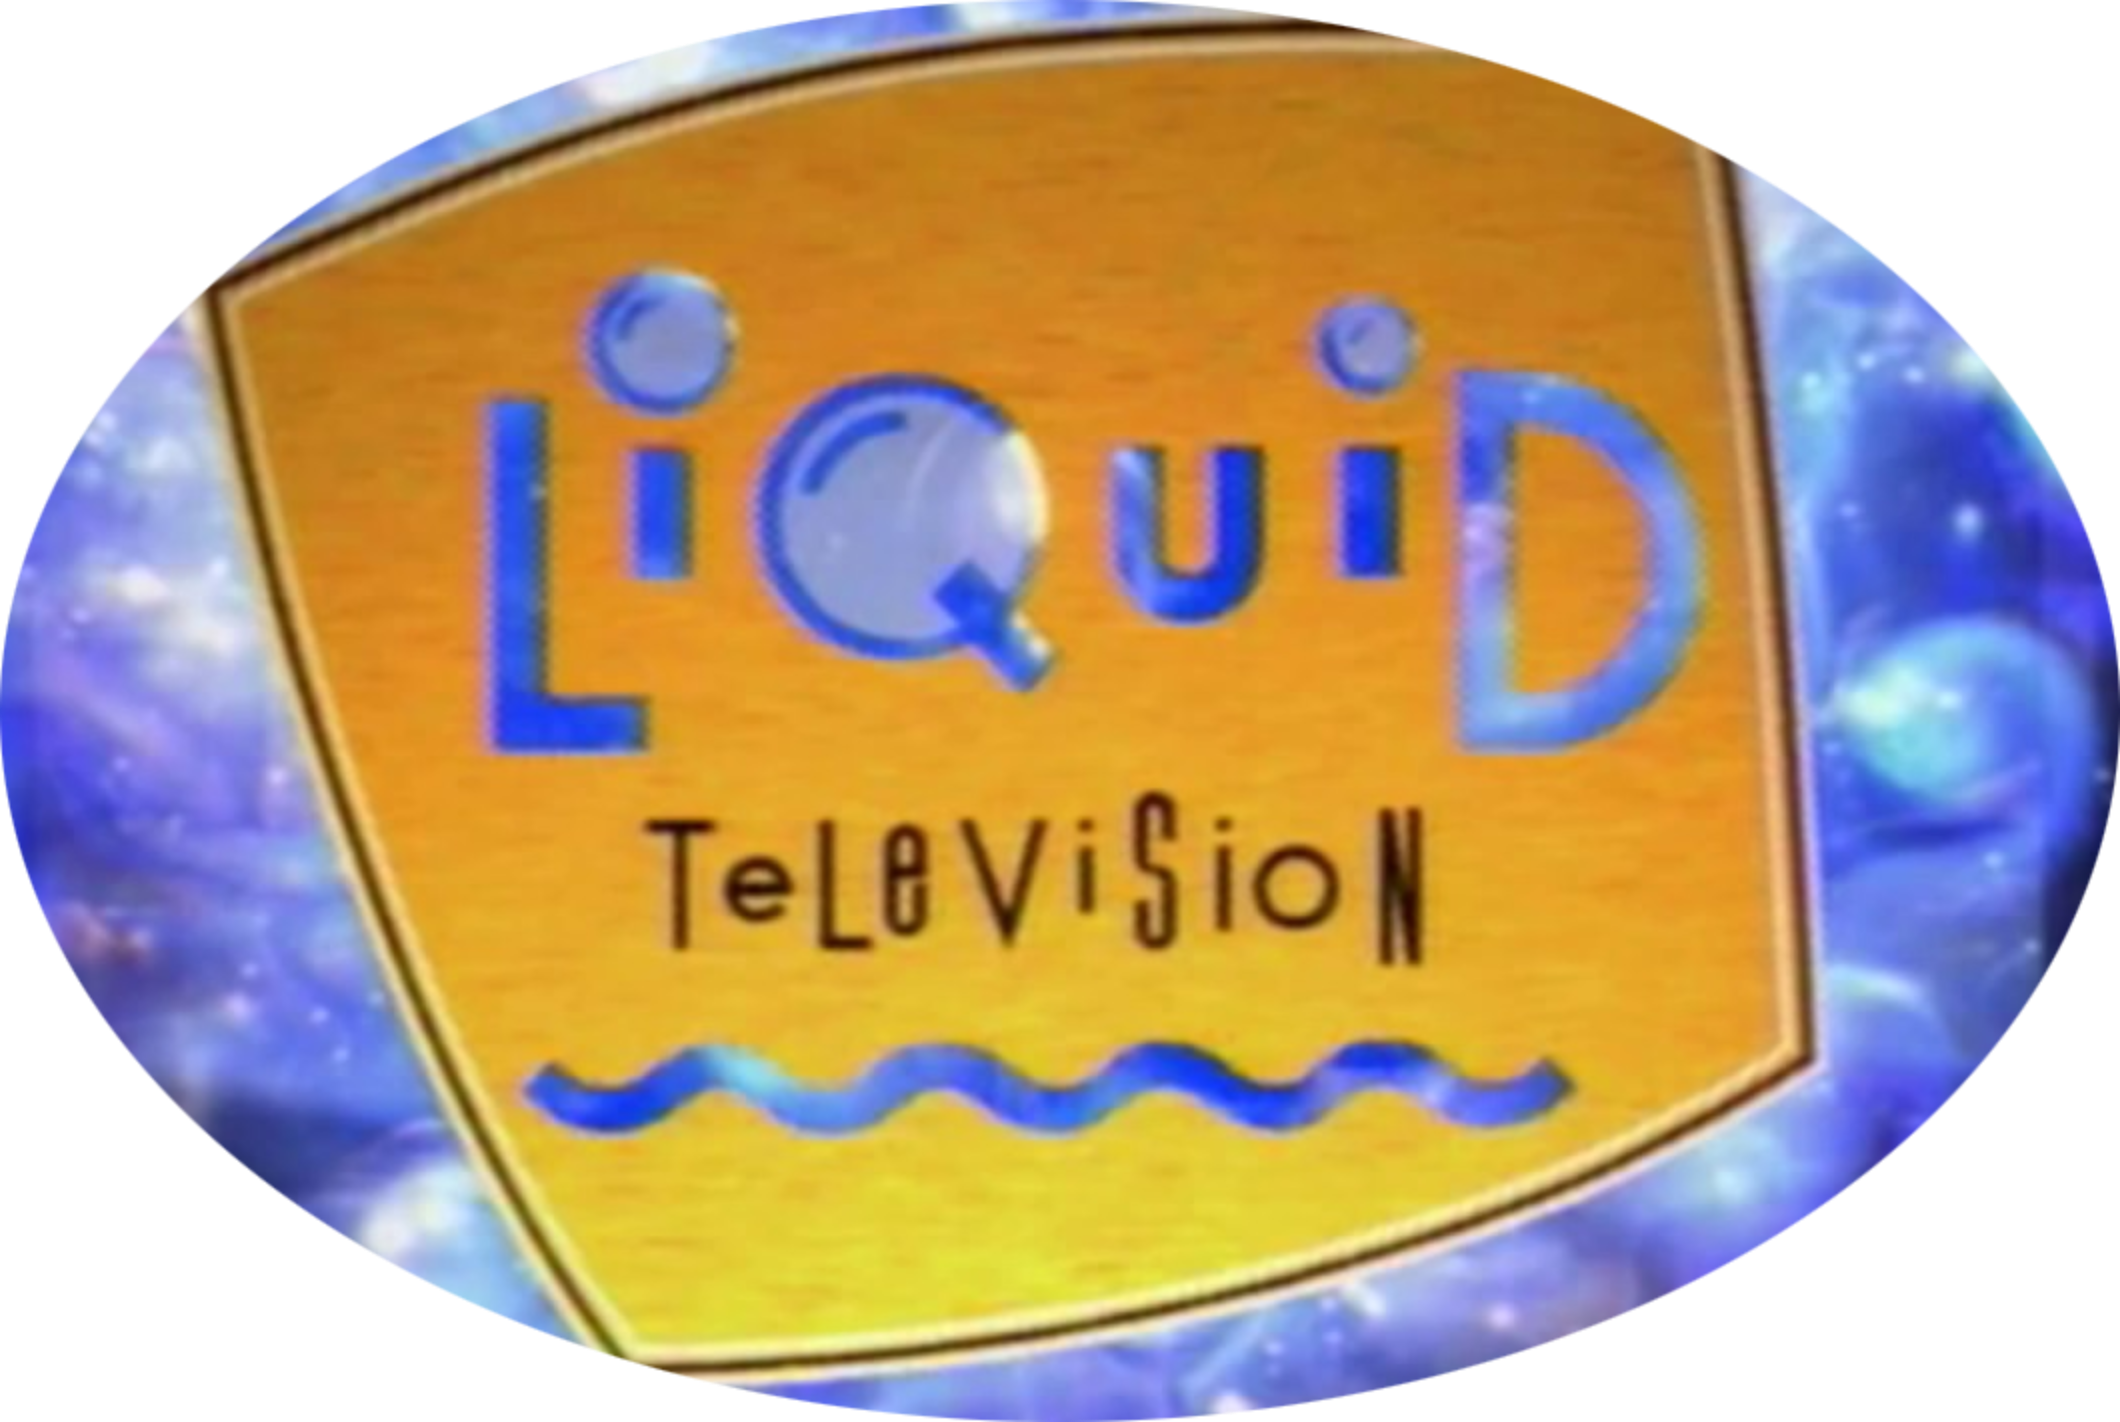 Liquid Television 